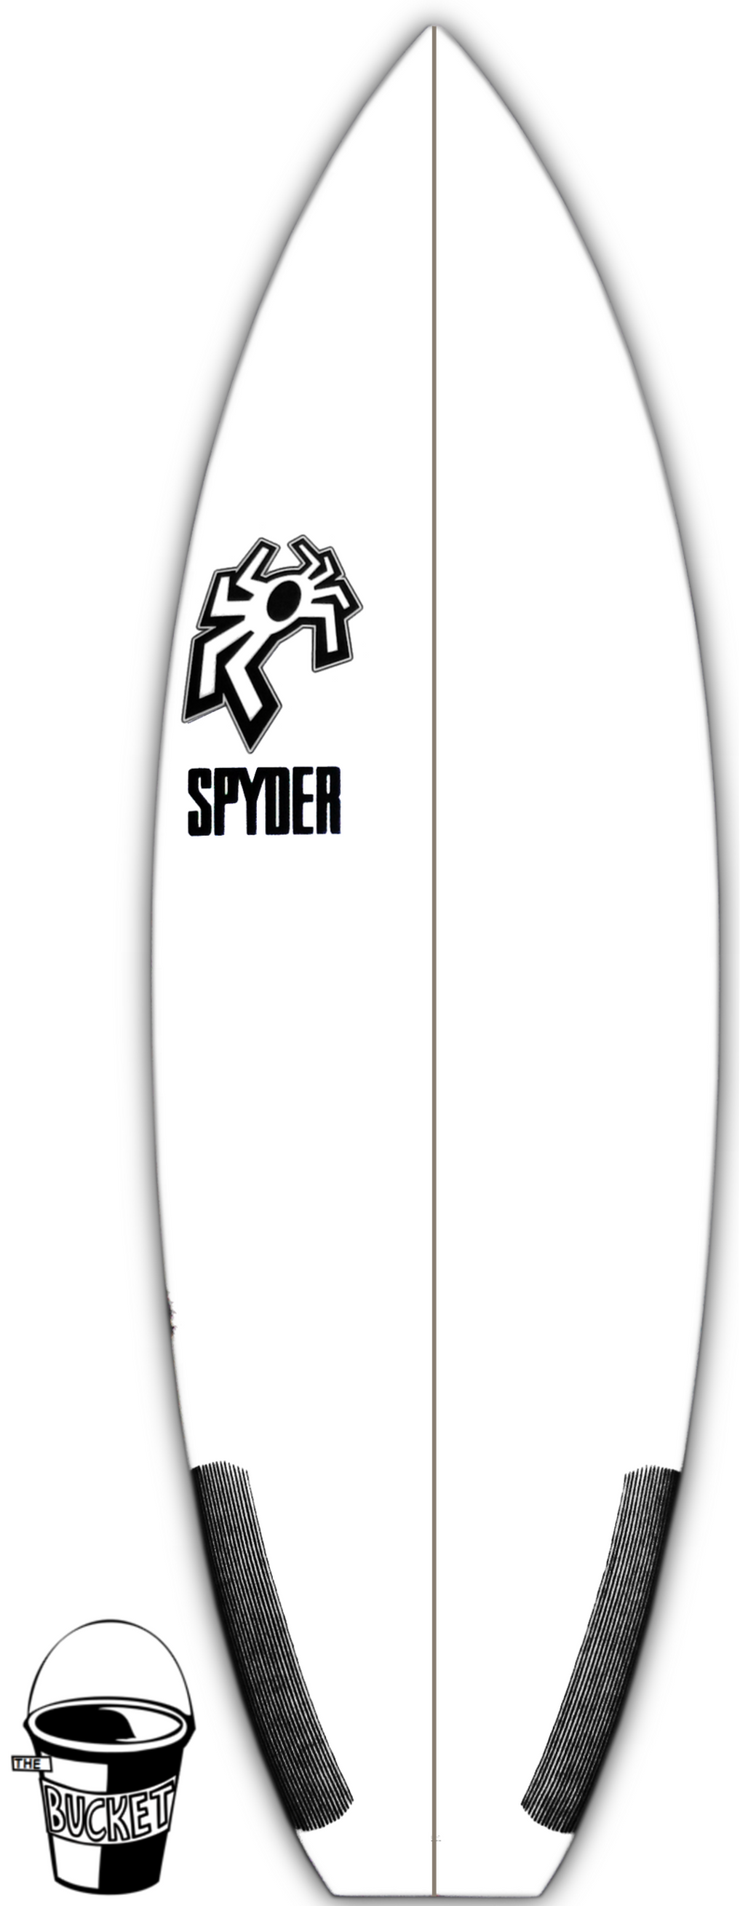 SPYDER SURFBOARDS, BUCKET, [description] - Spyder Surf